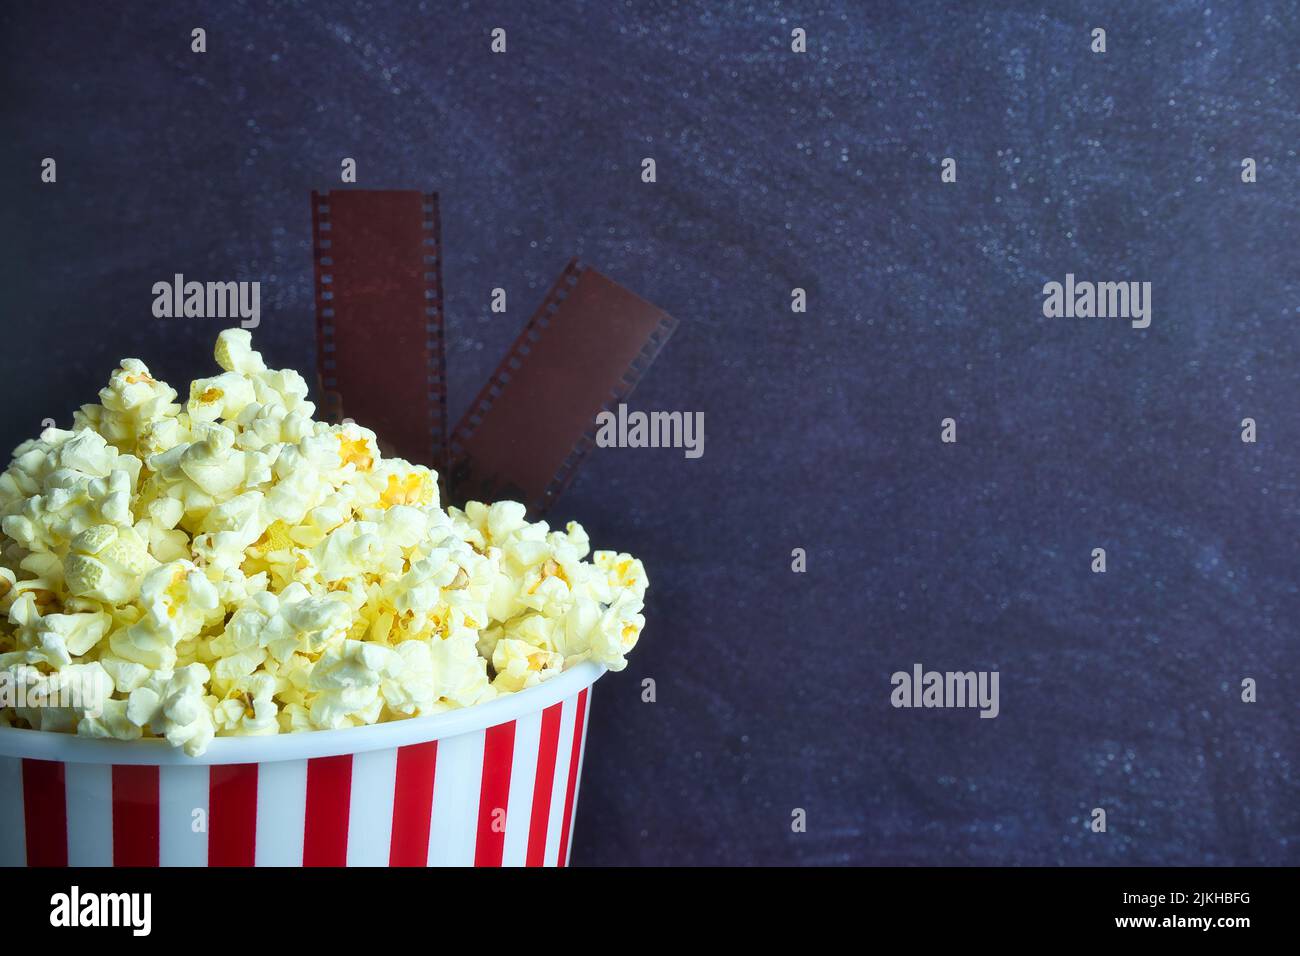 Online-Kino. Film-Hobby, Internet-Video-Streaming-Service oder Kino realistische Banner mit Eimer Popcorn, Tickets aus Film str Stockfoto